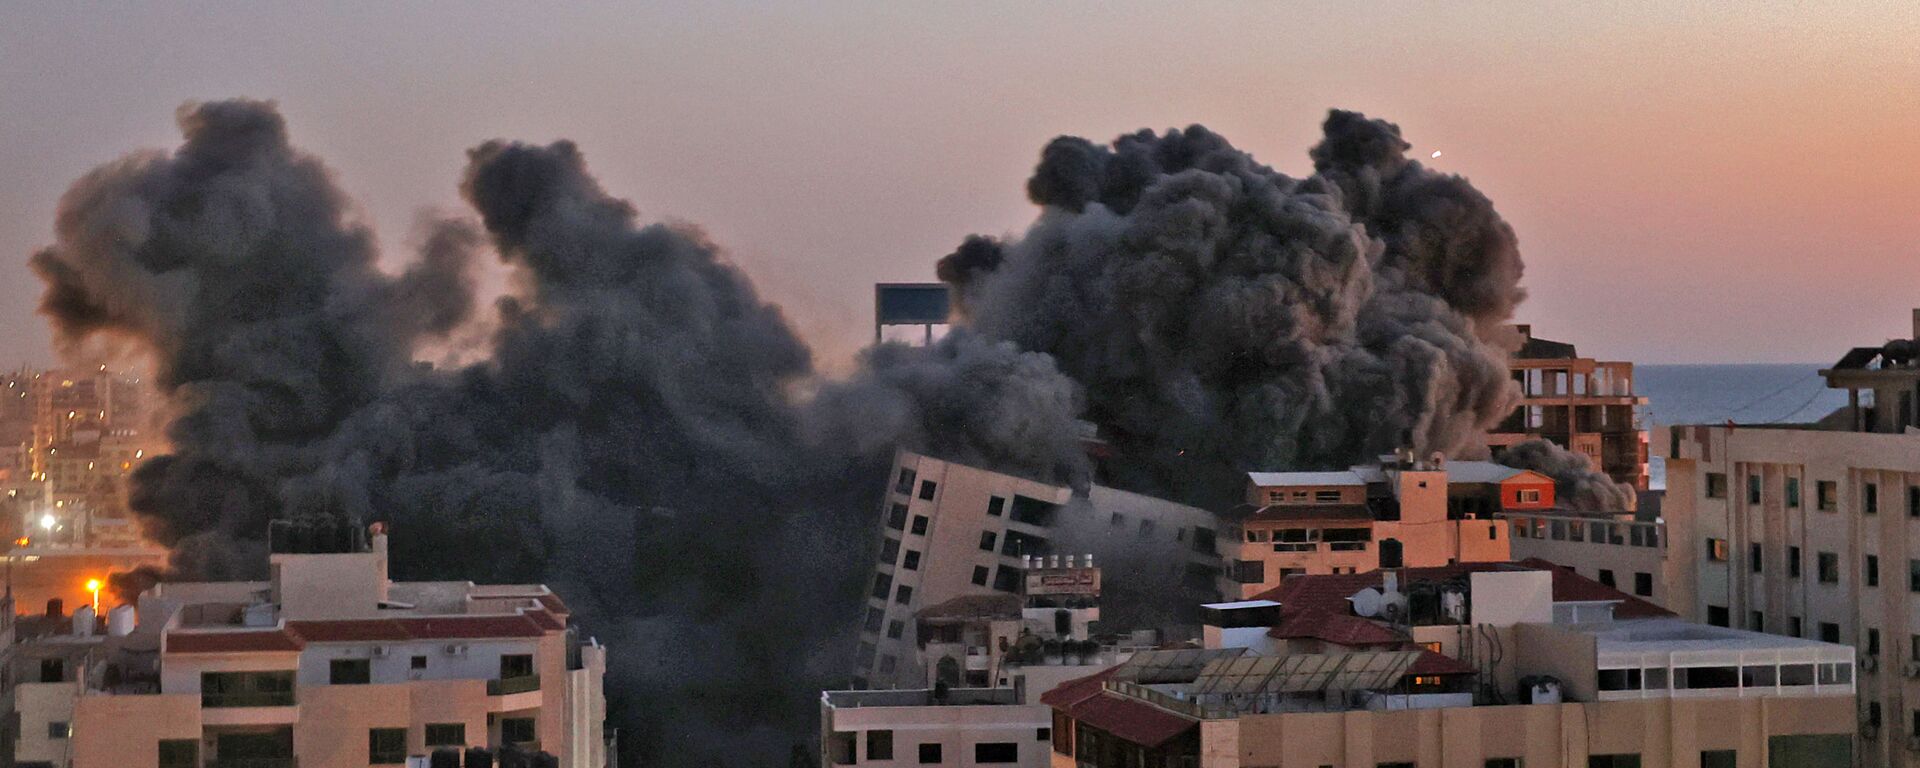 Пожарные тушат горящие многоквартирные дома после израильских авиаударов в городе Газа - Sputnik Ўзбекистон, 1920, 15.05.2021